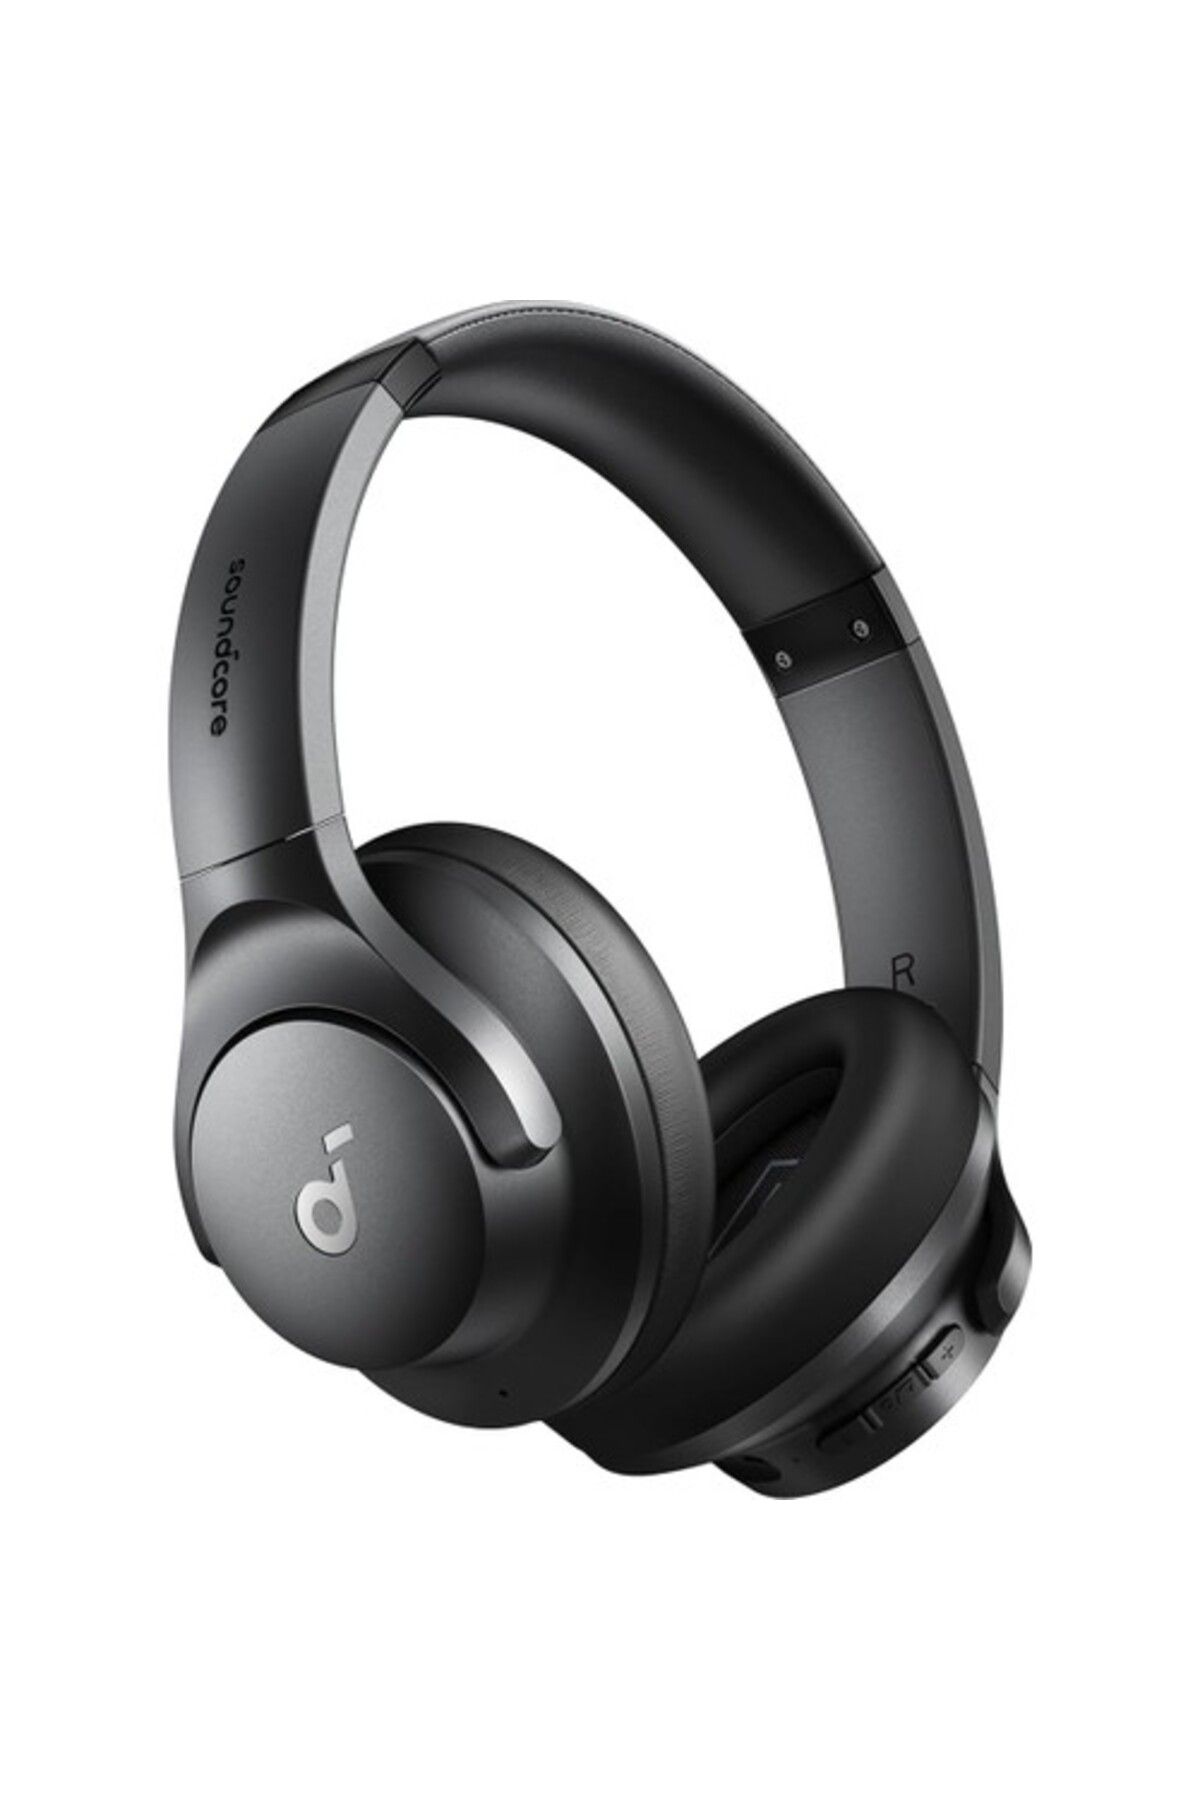 Anker Soundcore Life Q20i Bluetooth Kablosuz Kulaklık Hibrit Aktif Gürültü Önleyici Anc Siyah A3004